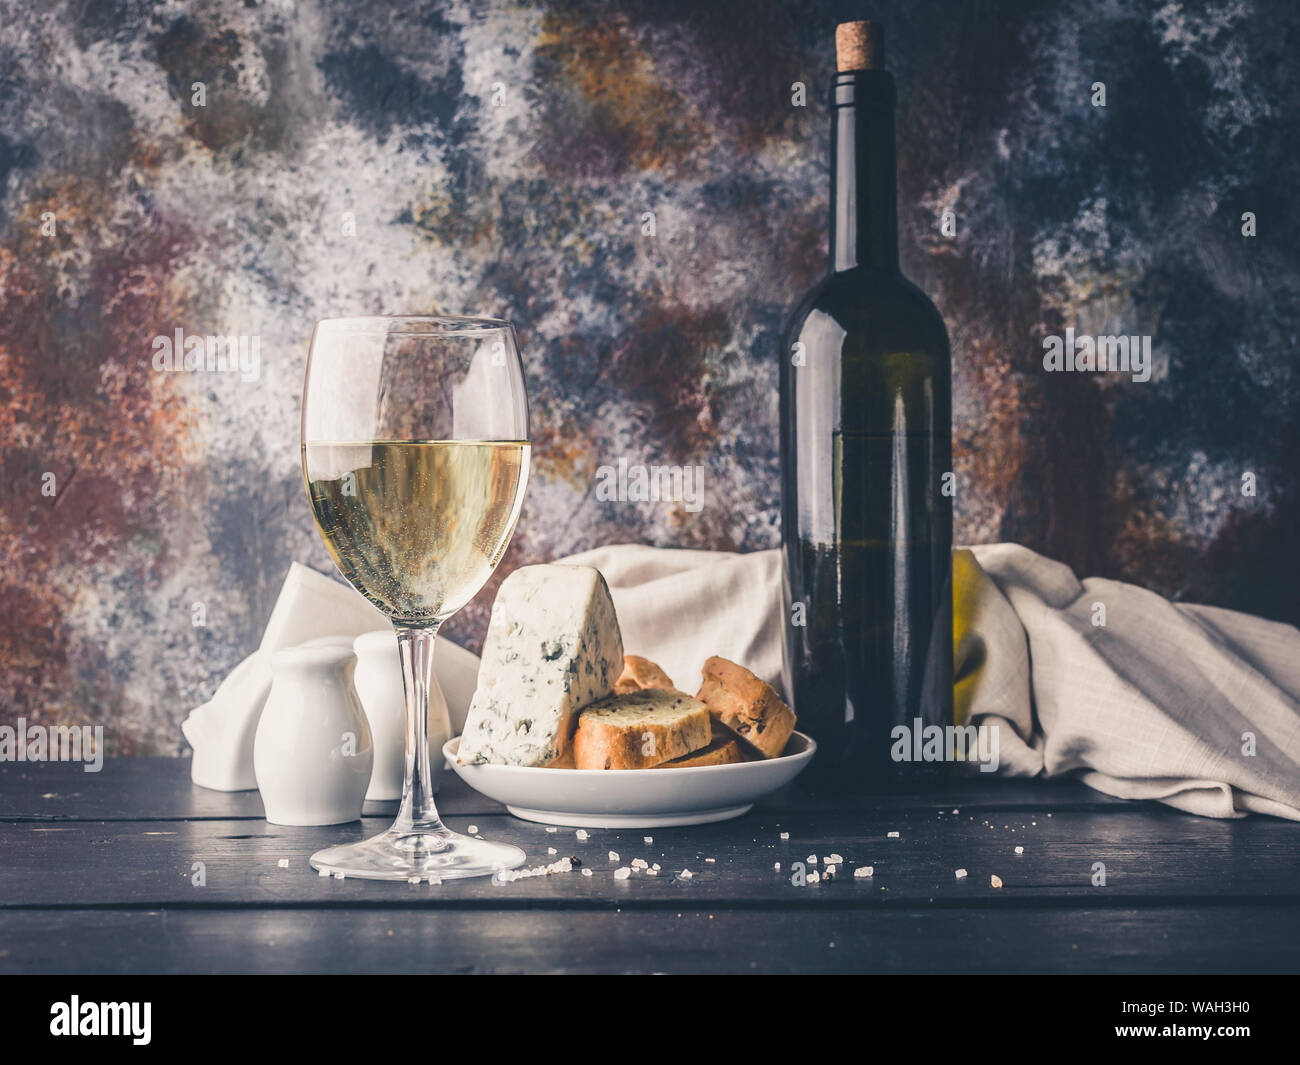 Still life un vaso de vino blanco, queso, pan y una botella de vino. Iluminación de clave baja Foto de stock